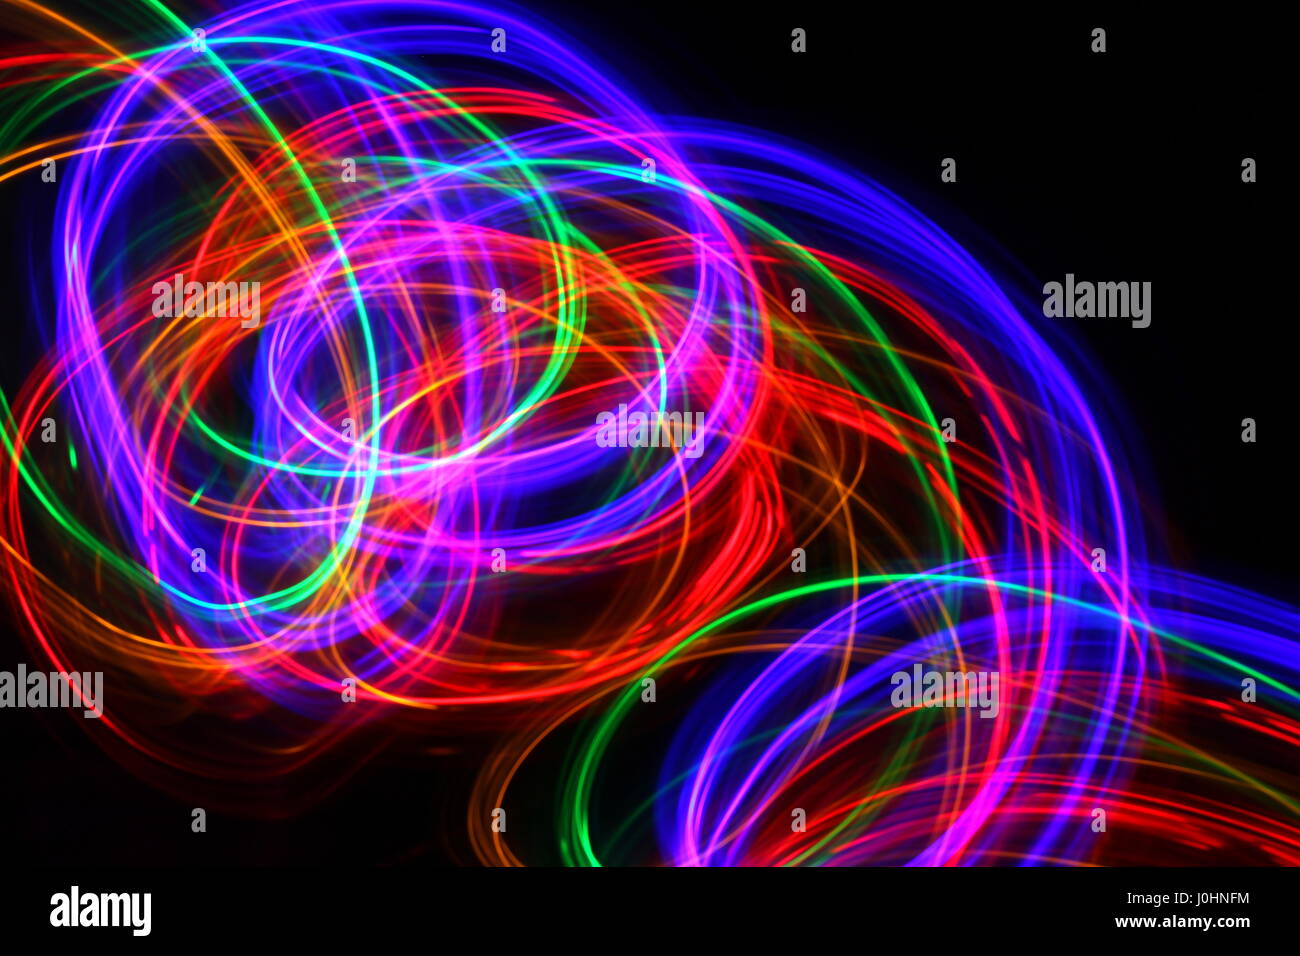 Fotografía de pintado de luz multicolor las luces de hadas en un patrón de espiral contra un fondo negro. Fotografía de larga exposición. Varios colores de neón. Foto de stock